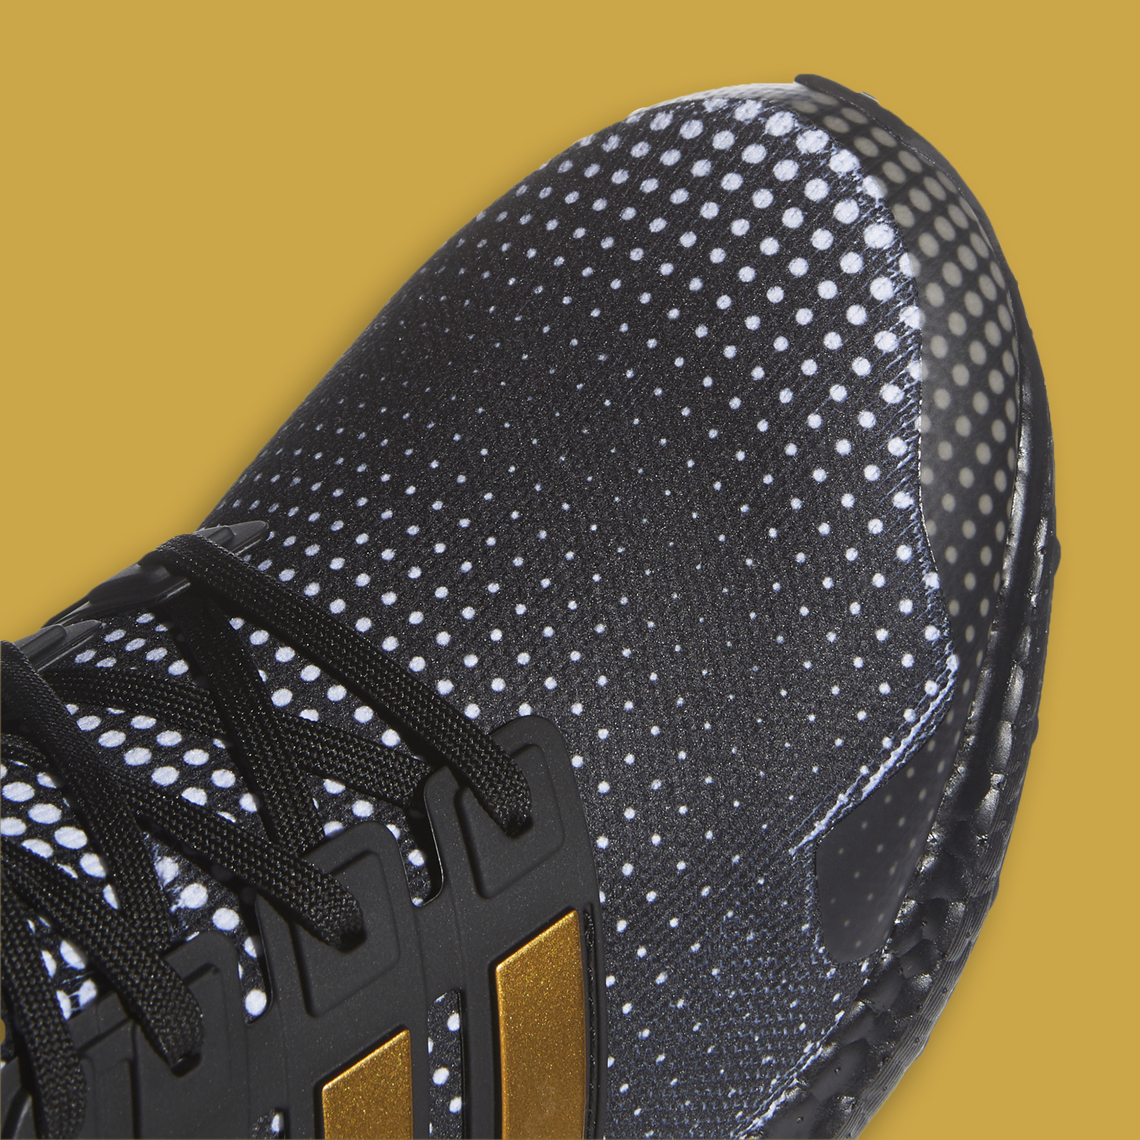 Adidas Ultra Boost Pat Mahomes Black Gold H02868 45